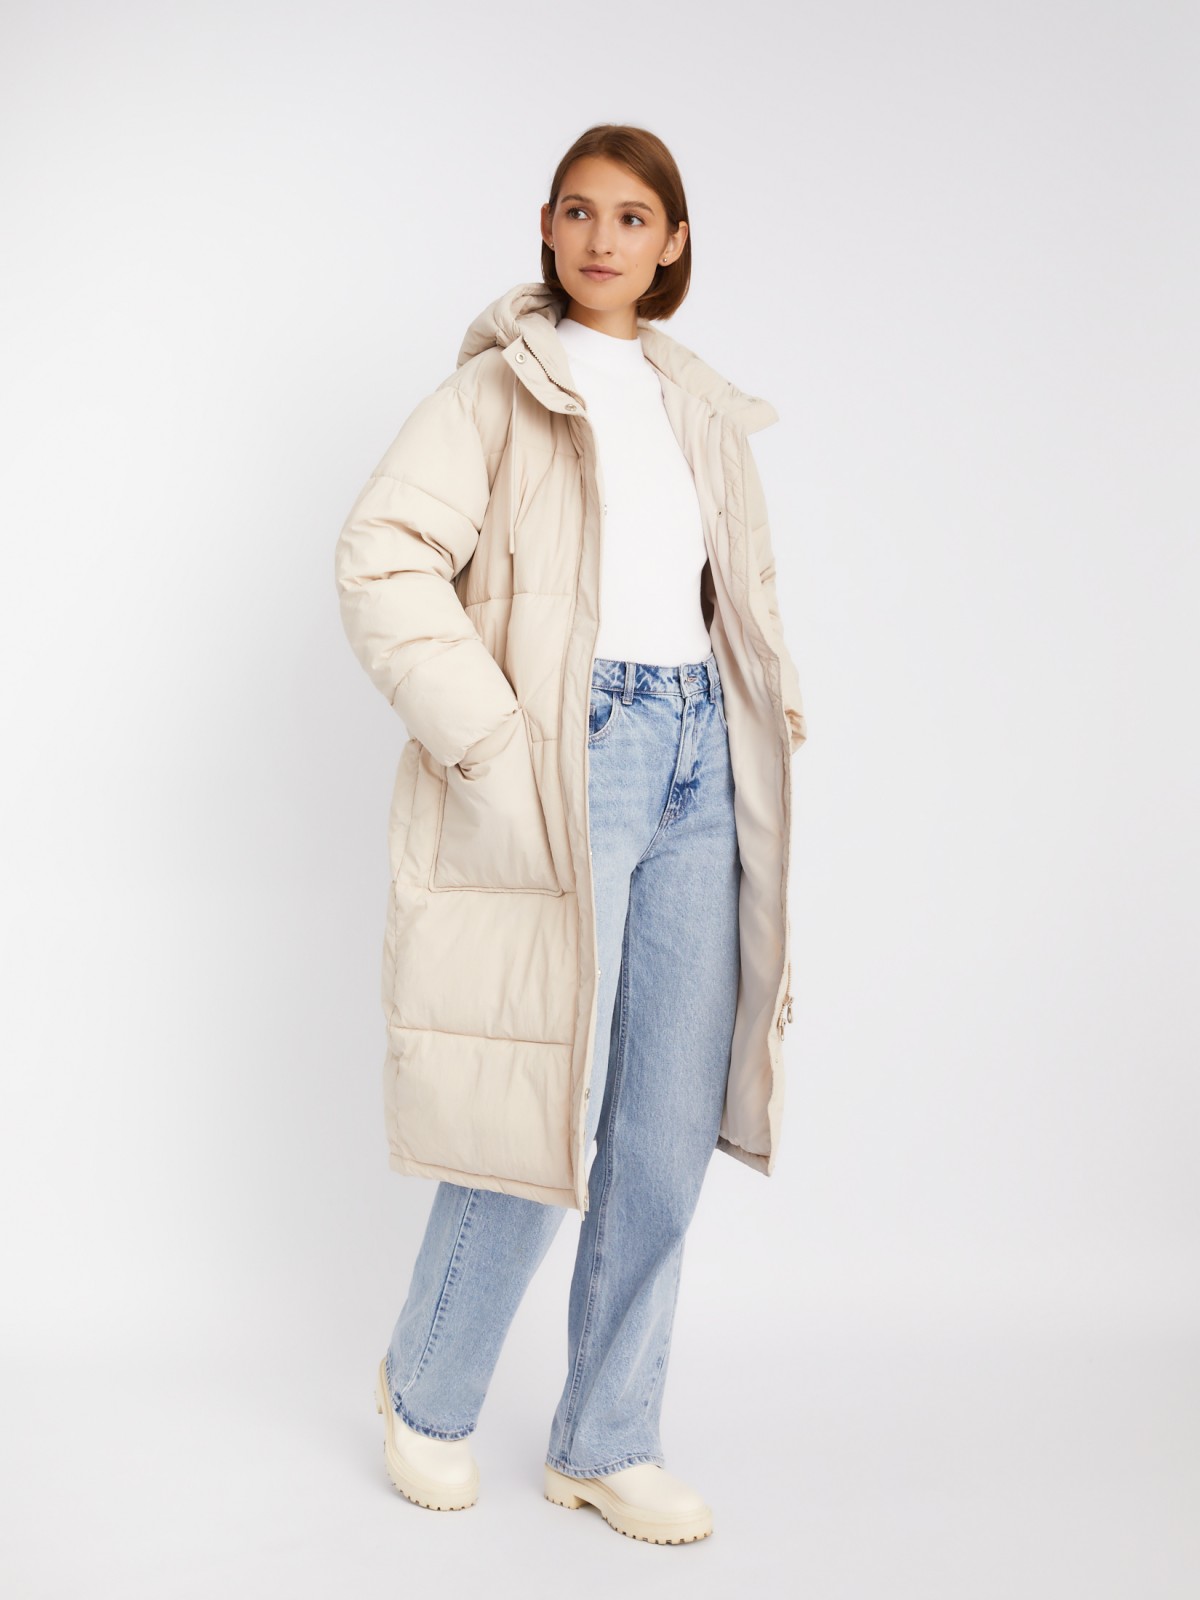 Длинная тёплая стёганая куртка-пальто с капюшоном zolla 023335202084, цвет молоко, размер XS - фото 2